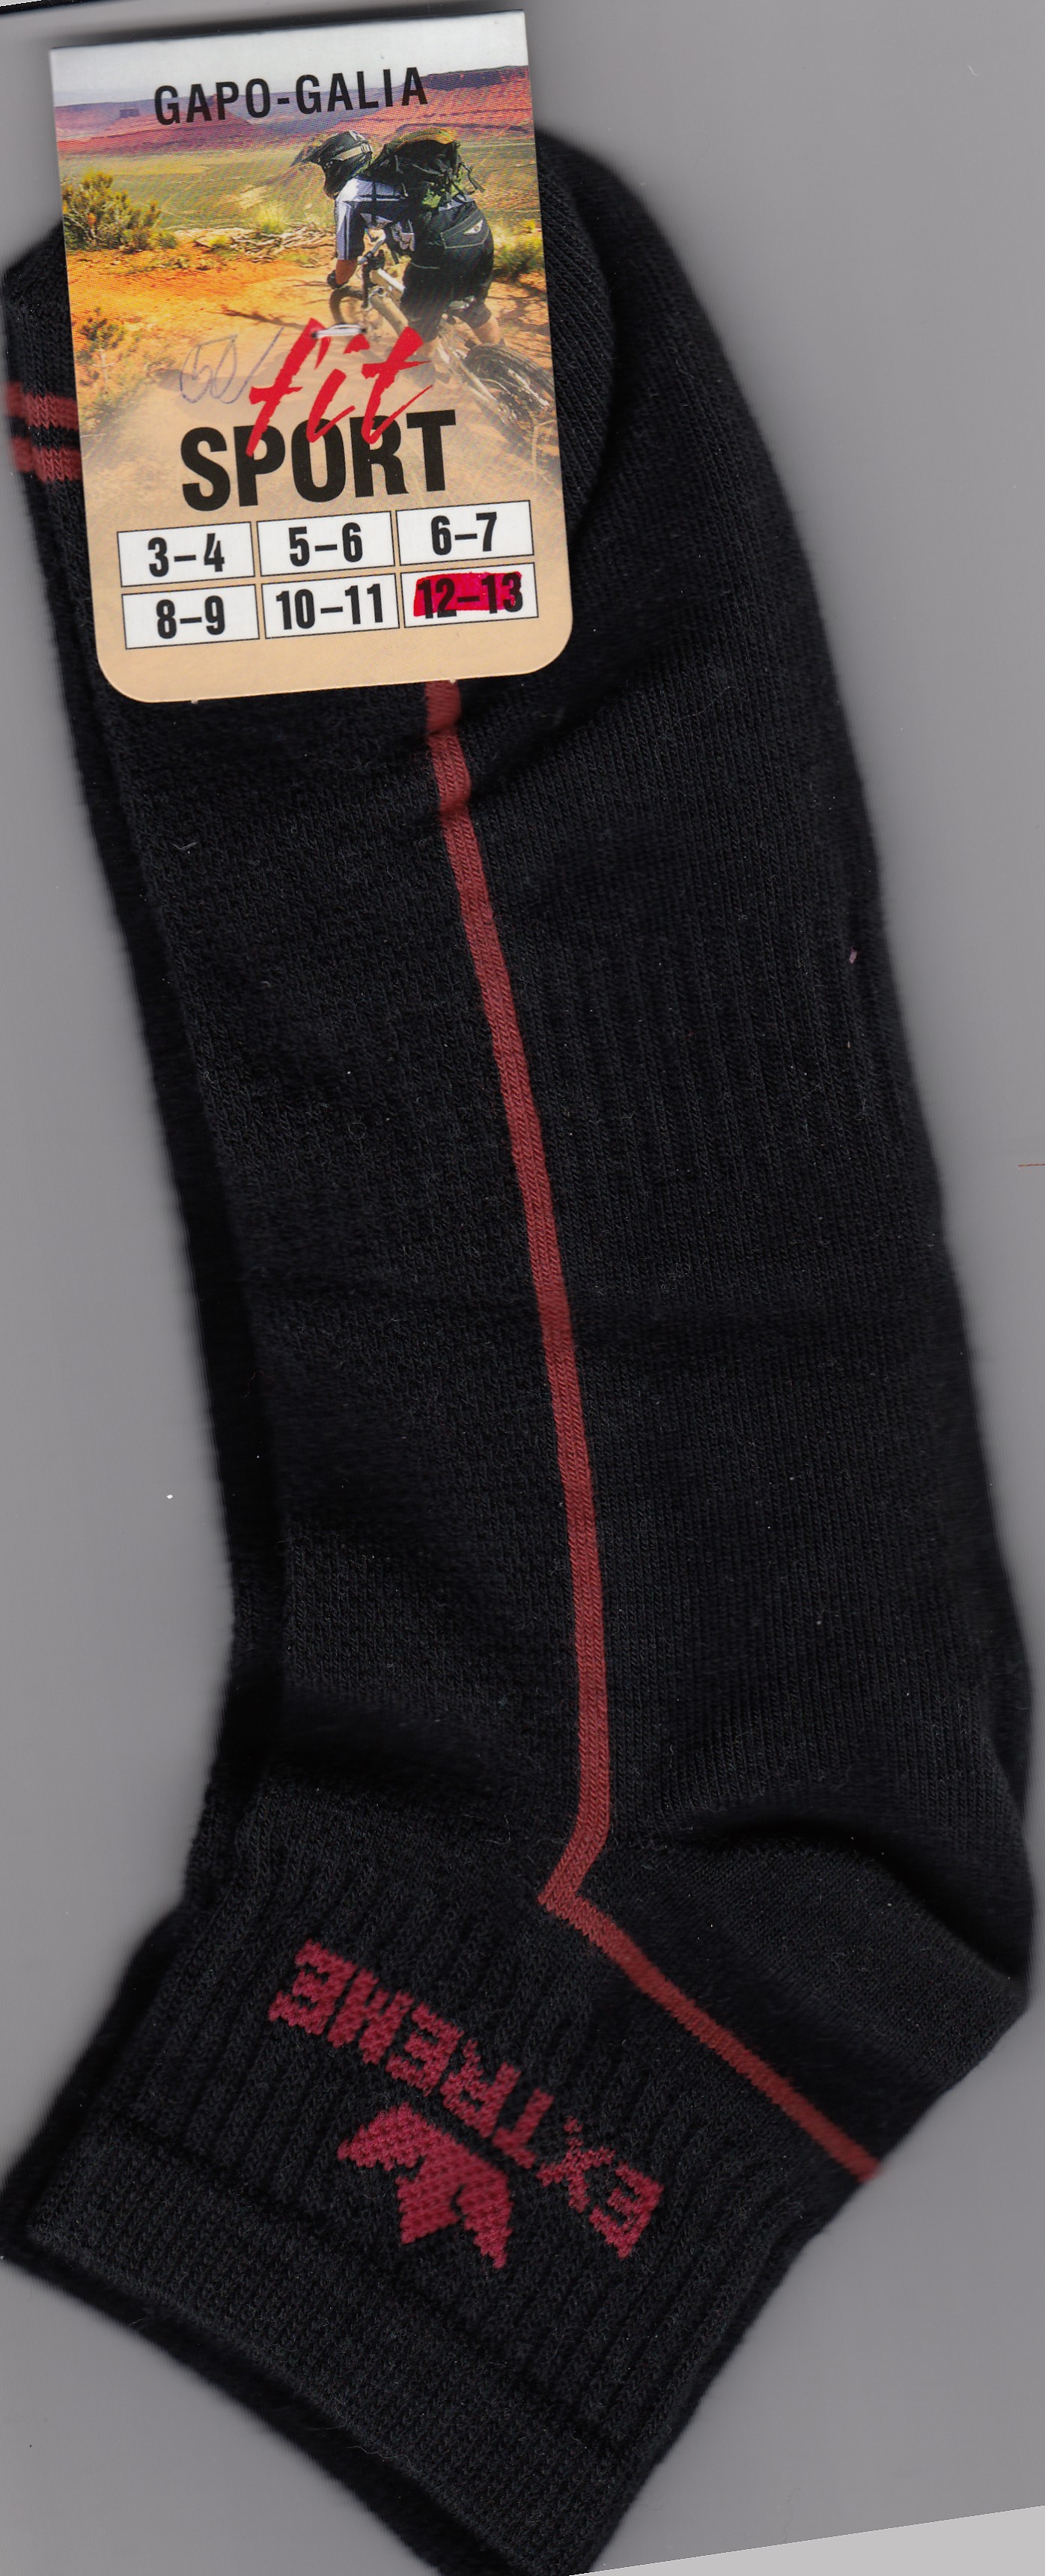 Pánské ponožky  krátké velikost 12-13(47-48)